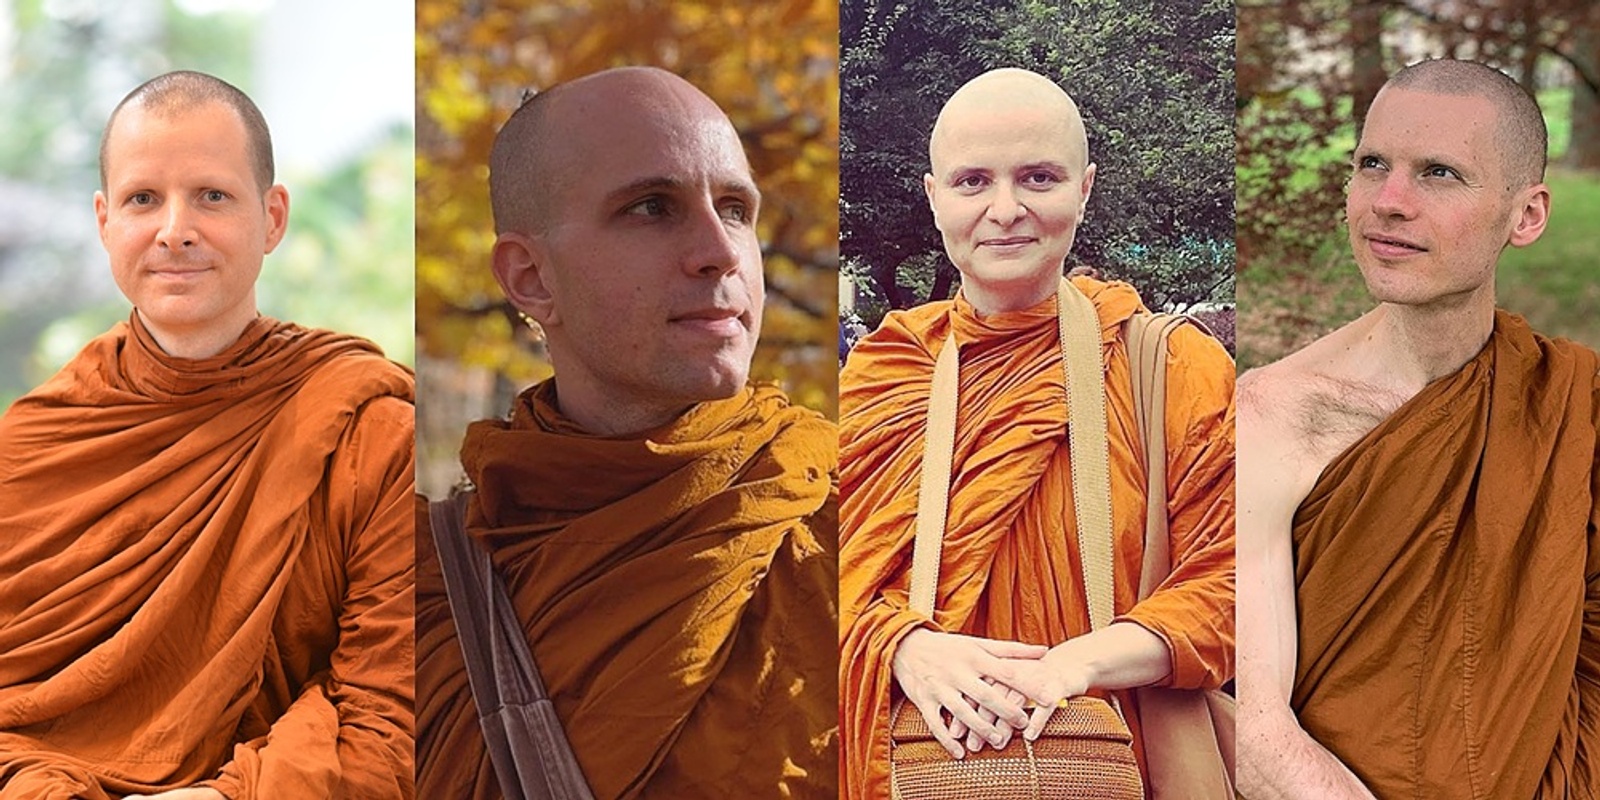 The Zen Monastic Experience